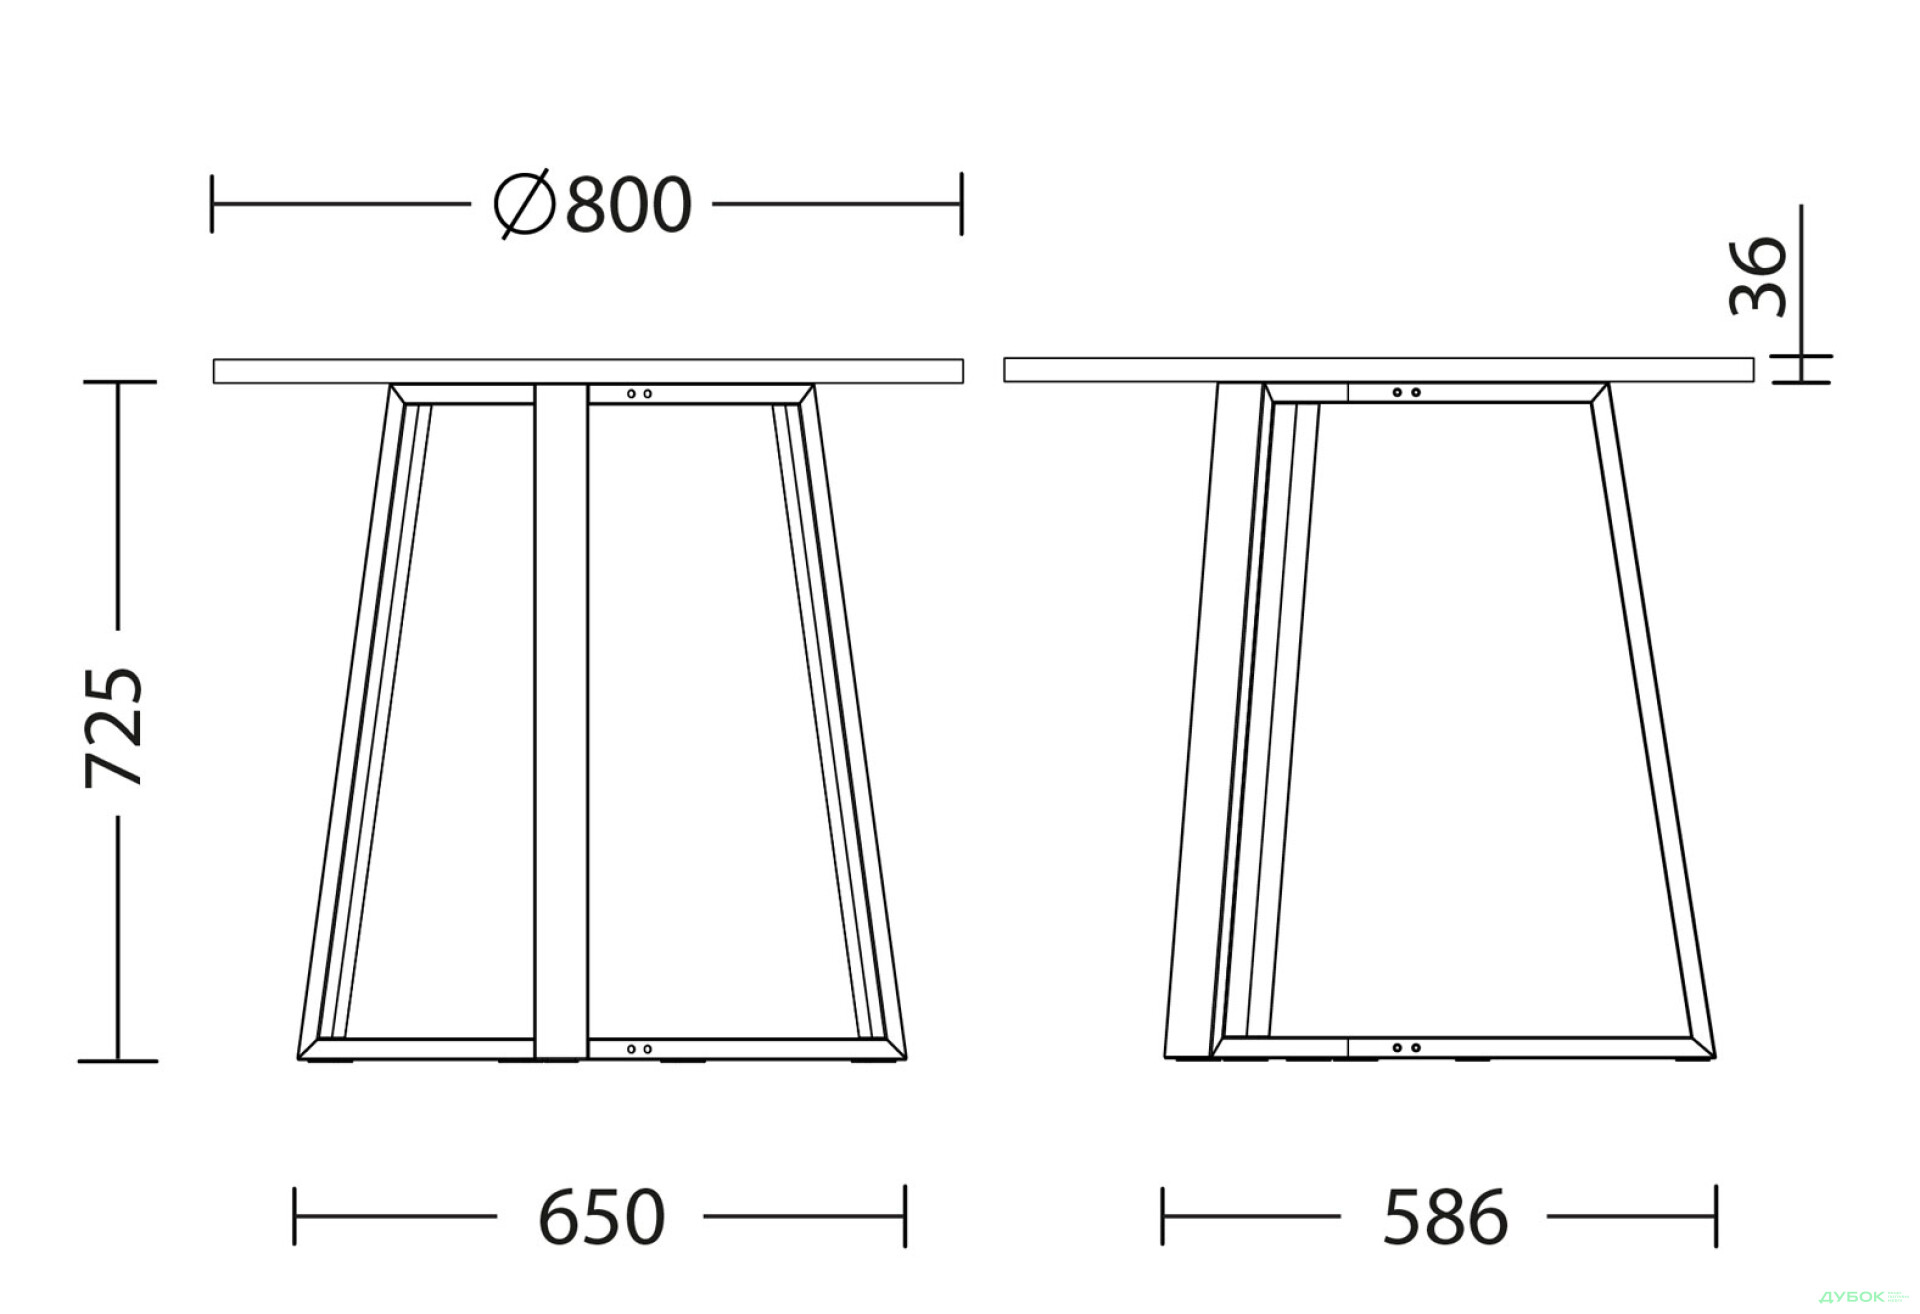 Фото 3 - Стол обеденный Новый Стиль Calipso white (36) D800 80x80 см, черный